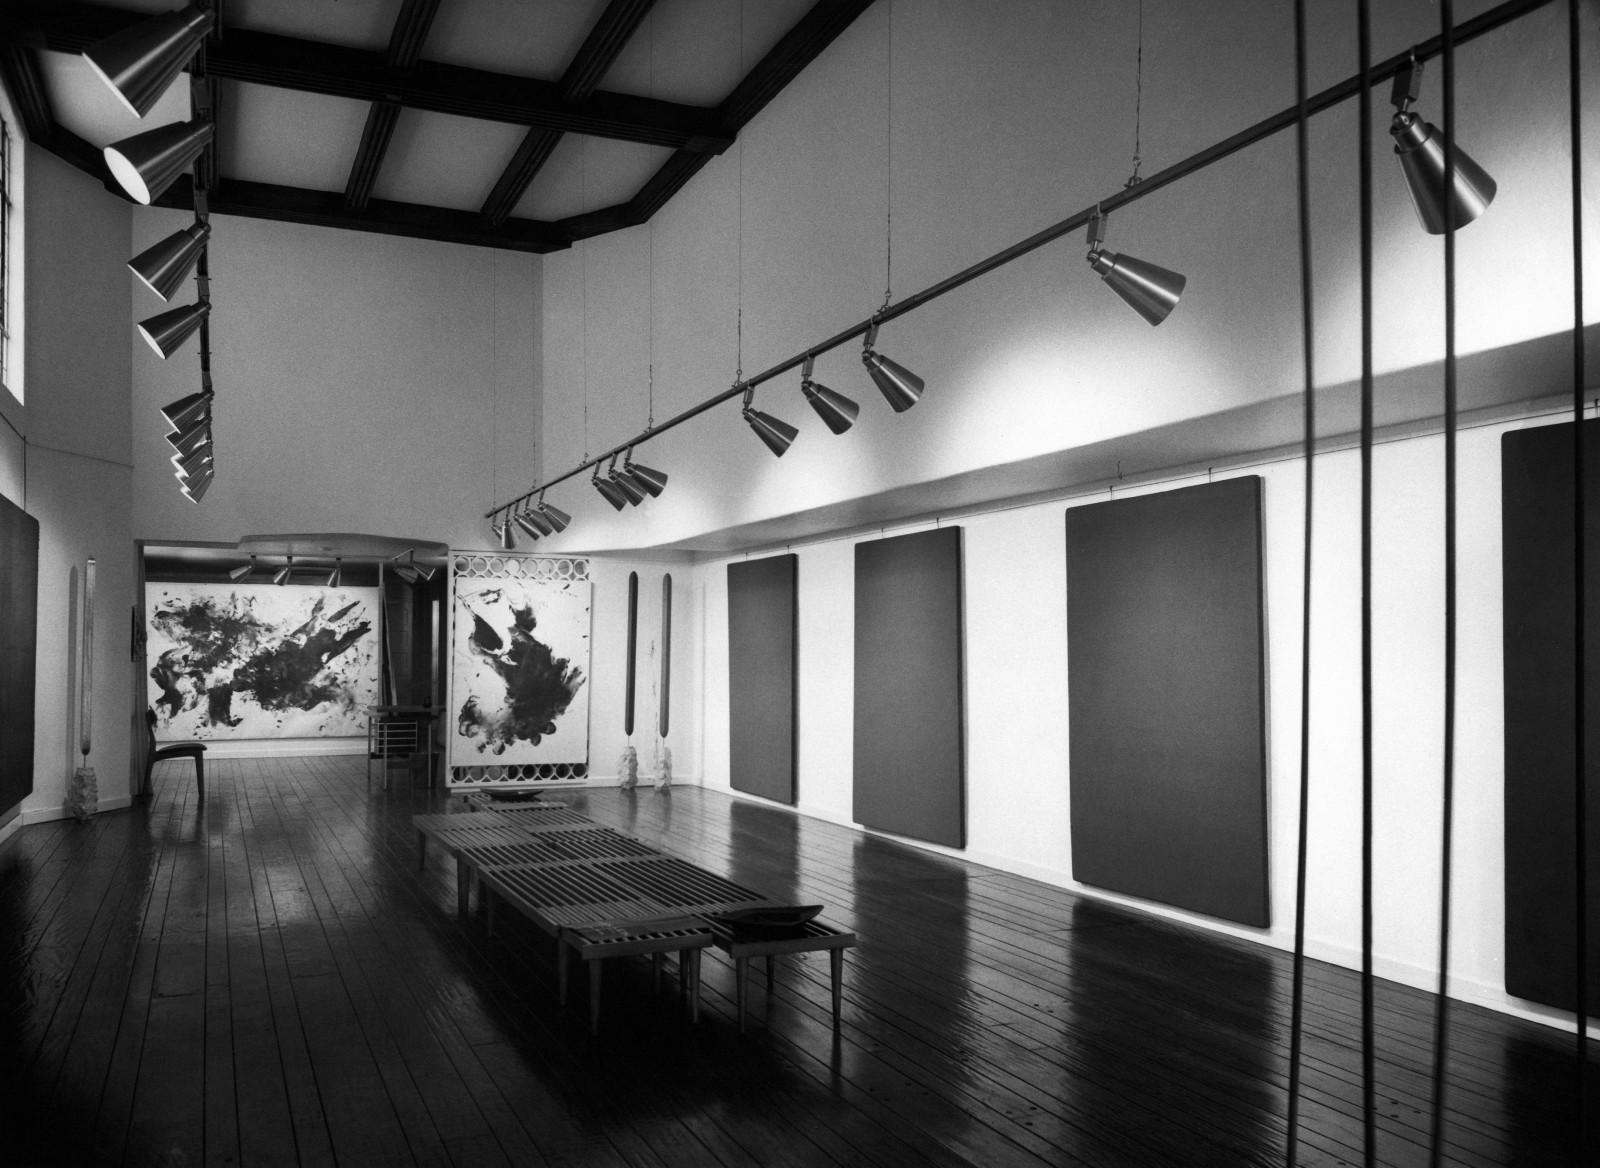 Vue de l'exposition "Yves Klein le Monochrome", Dwan Gallery, Los Angeles, 1961